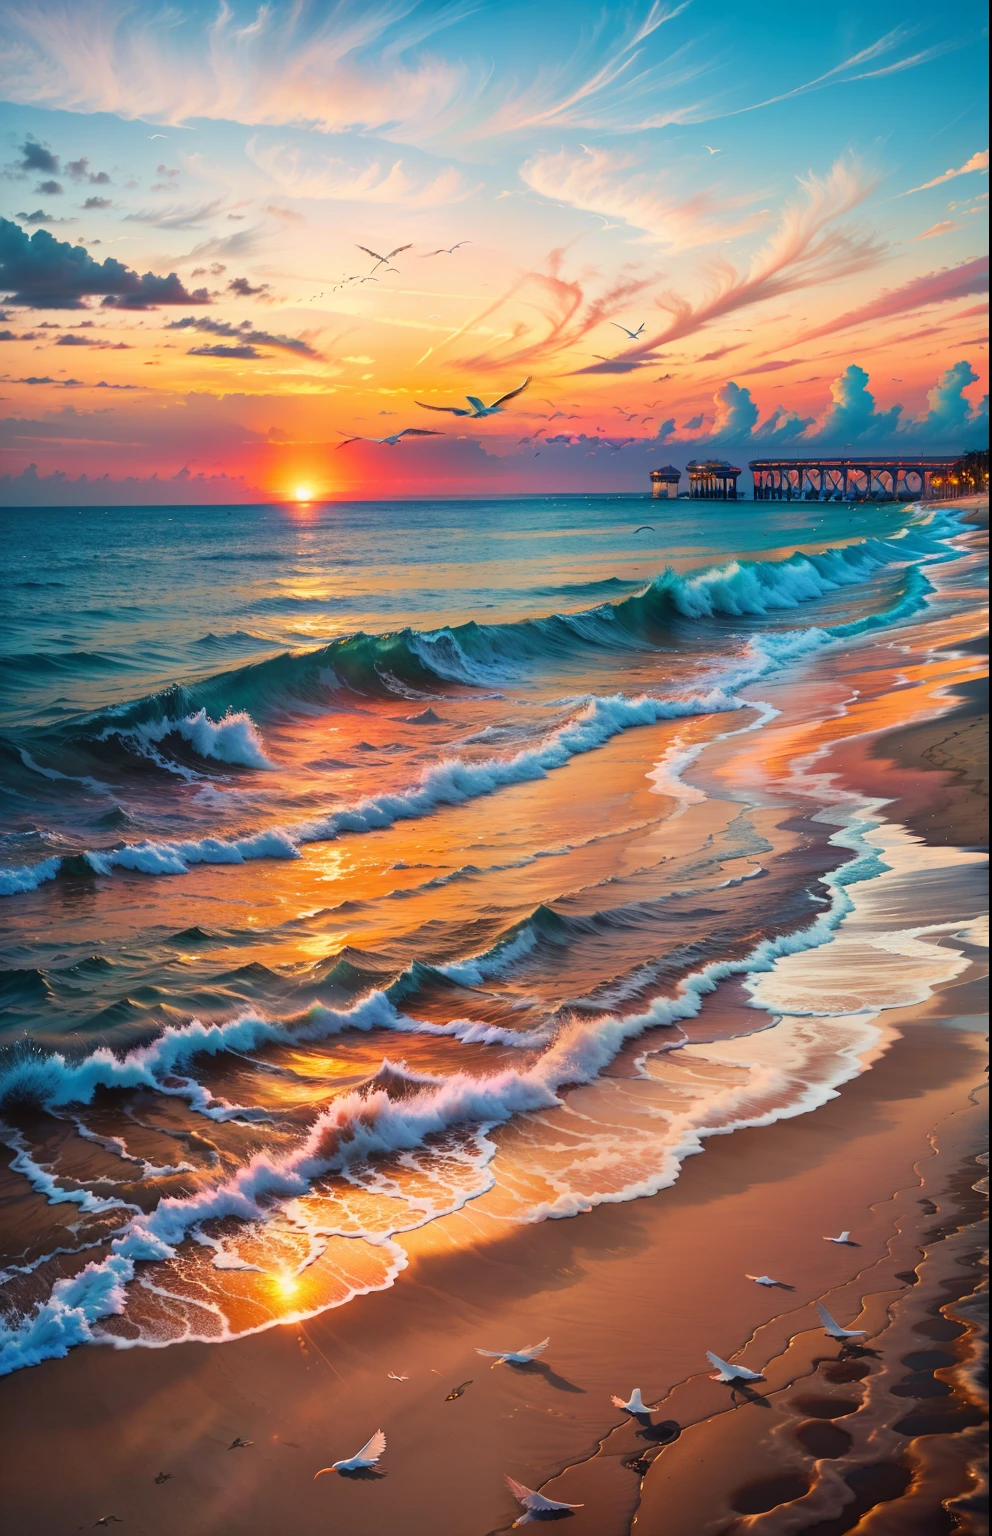 Un coucher de soleil absolument fascinant sur la plage, avec un mélange d&#39;oranges, roses, et les jaunes remplissent le ciel. Les eaux cristallines de la mer embrassant doucement le rivage, avec une plage de sable blanc qui s&#39;étend au loin. La scène est dynamique et époustouflante, avec des mouettes planant haut dans le ciel et des palmiers se balançant doucement. Imprégnez-vous de l&#39;atmosphère apaisante et laissez la paix vous envahir.